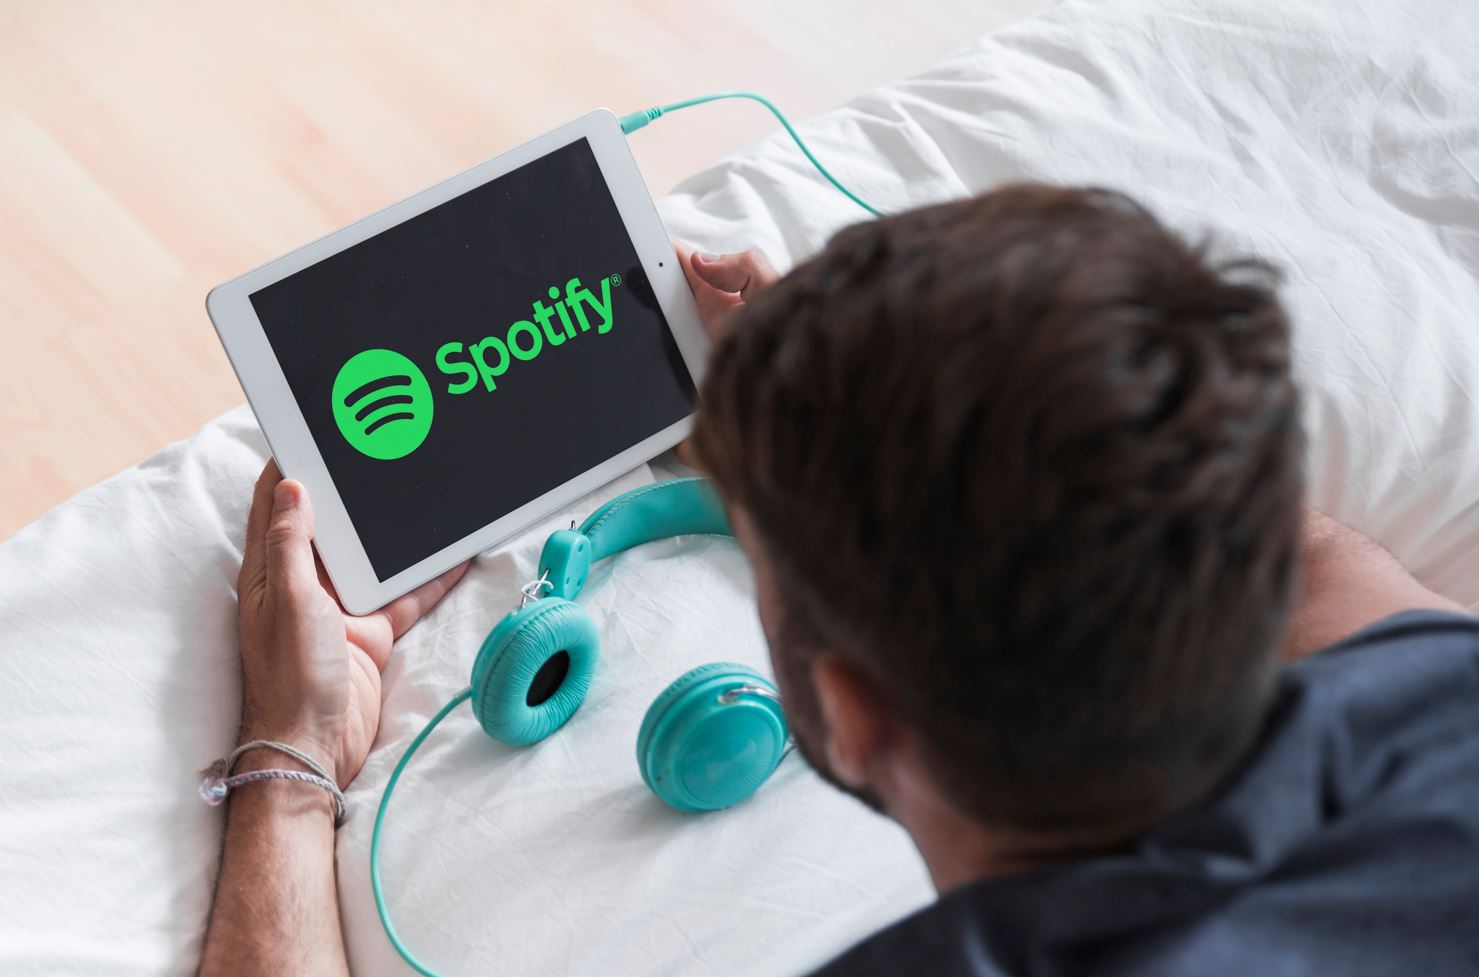 Pritet konkurrencë e fortë me YouTube, Spotify teston video të plota muzikore